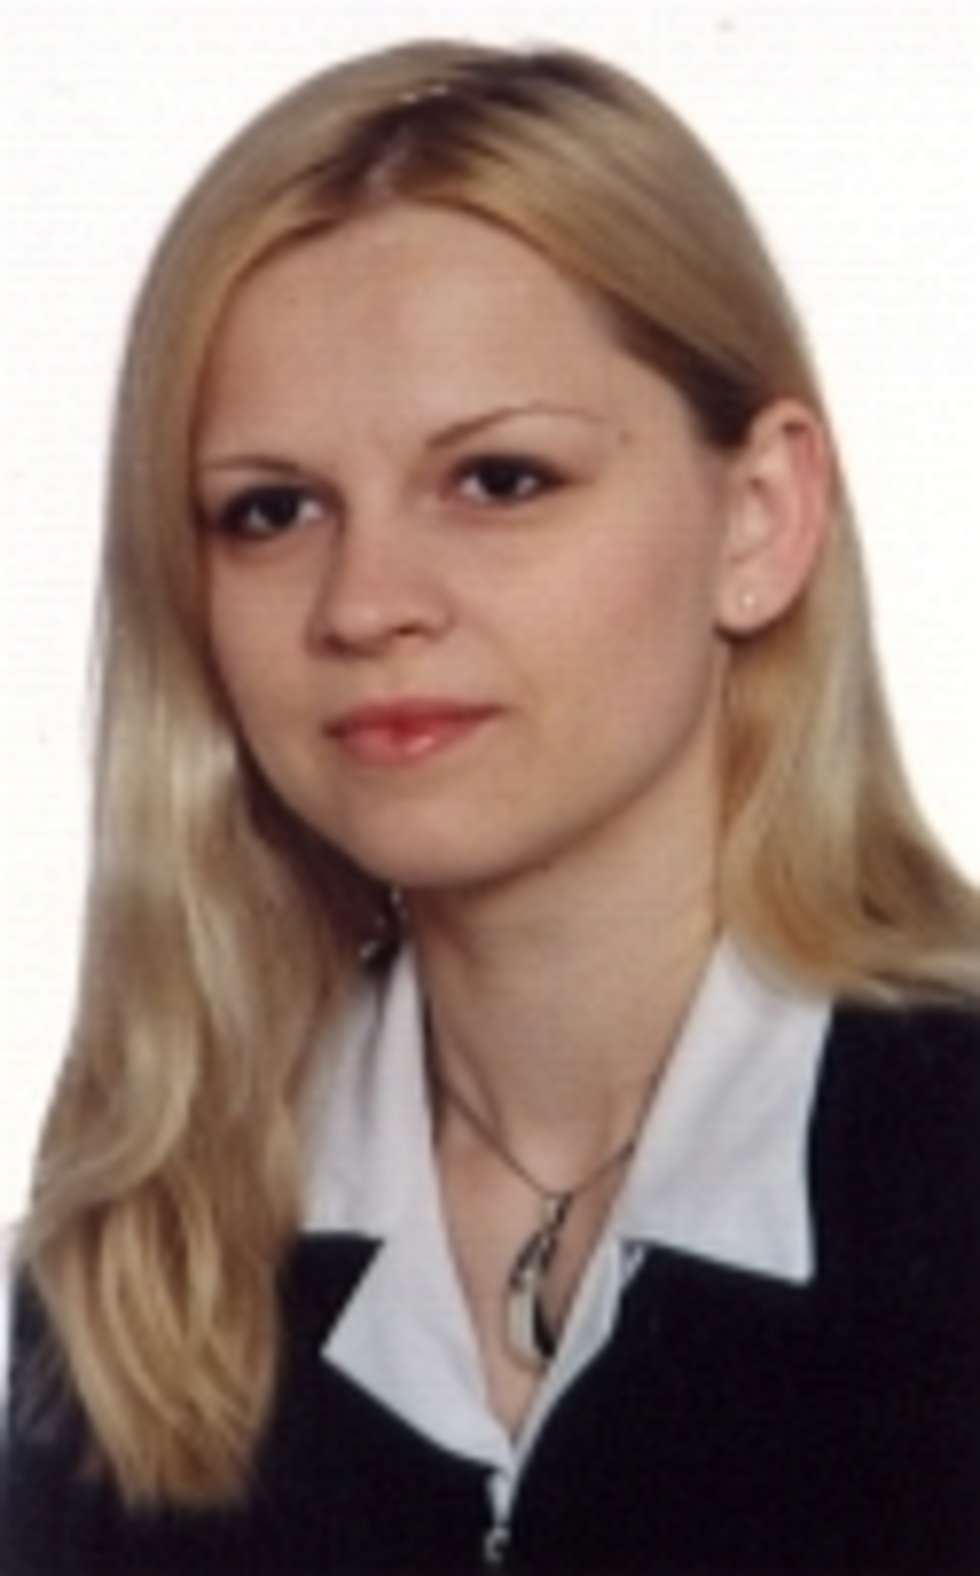  4 lipca 2010 r. w Krasnymstawie (lubelskie) zaginęła Katarzyna Demczuk. Miała wtedy 26 lat, 160 cm wzrostu, zielone oczy oraz tatuaż na dolnej części pleców przedstawiający pilota. W dniu zaginięcia ubrana była w czarną bluzkę na ramiączka, granatowe dżinsy, białe sportowe buty.
<BR><BR>
Ktokolwiek widział Katarzynę Demczuk lub ma jakiekolwiek informacje o jej losie proszony jest o kontakt z ITAKĄ - Centrum Poszukiwań Ludzi Zaginionych pod całodobowymi numerami: 801 24 70 70 oraz 22 654 70 70. Można również napisać w tej sprawie do ITAKI: itaka@zaginieni.pl. 
